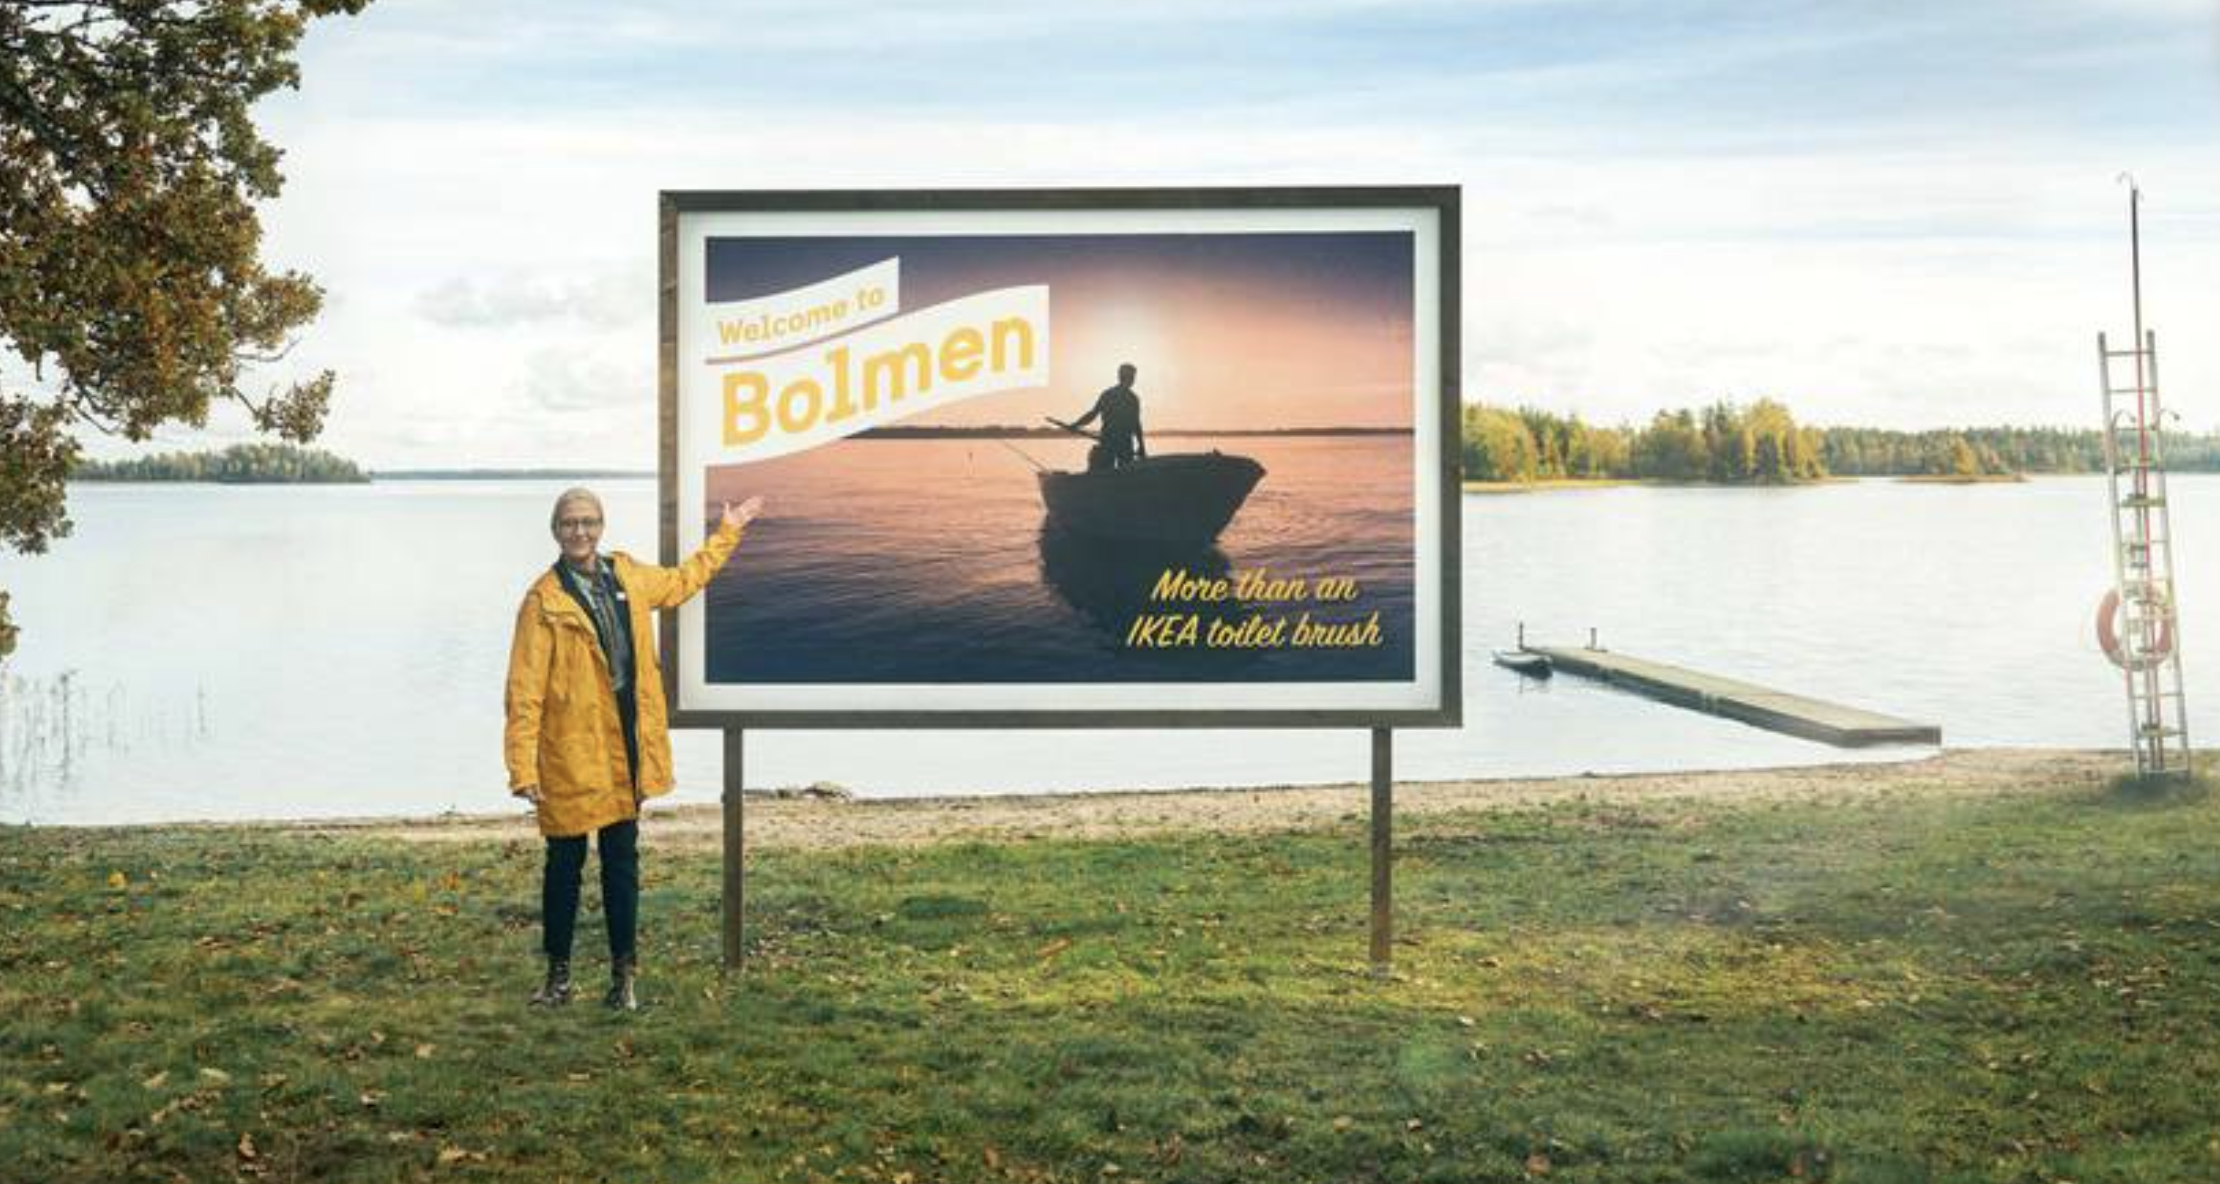 ¿Qué significan los nombres de los productos que están en venta en Ikea?. En la imagen, el lago Bolmen, mucho más que la escobilla del váter que vende la multinacional sueca.